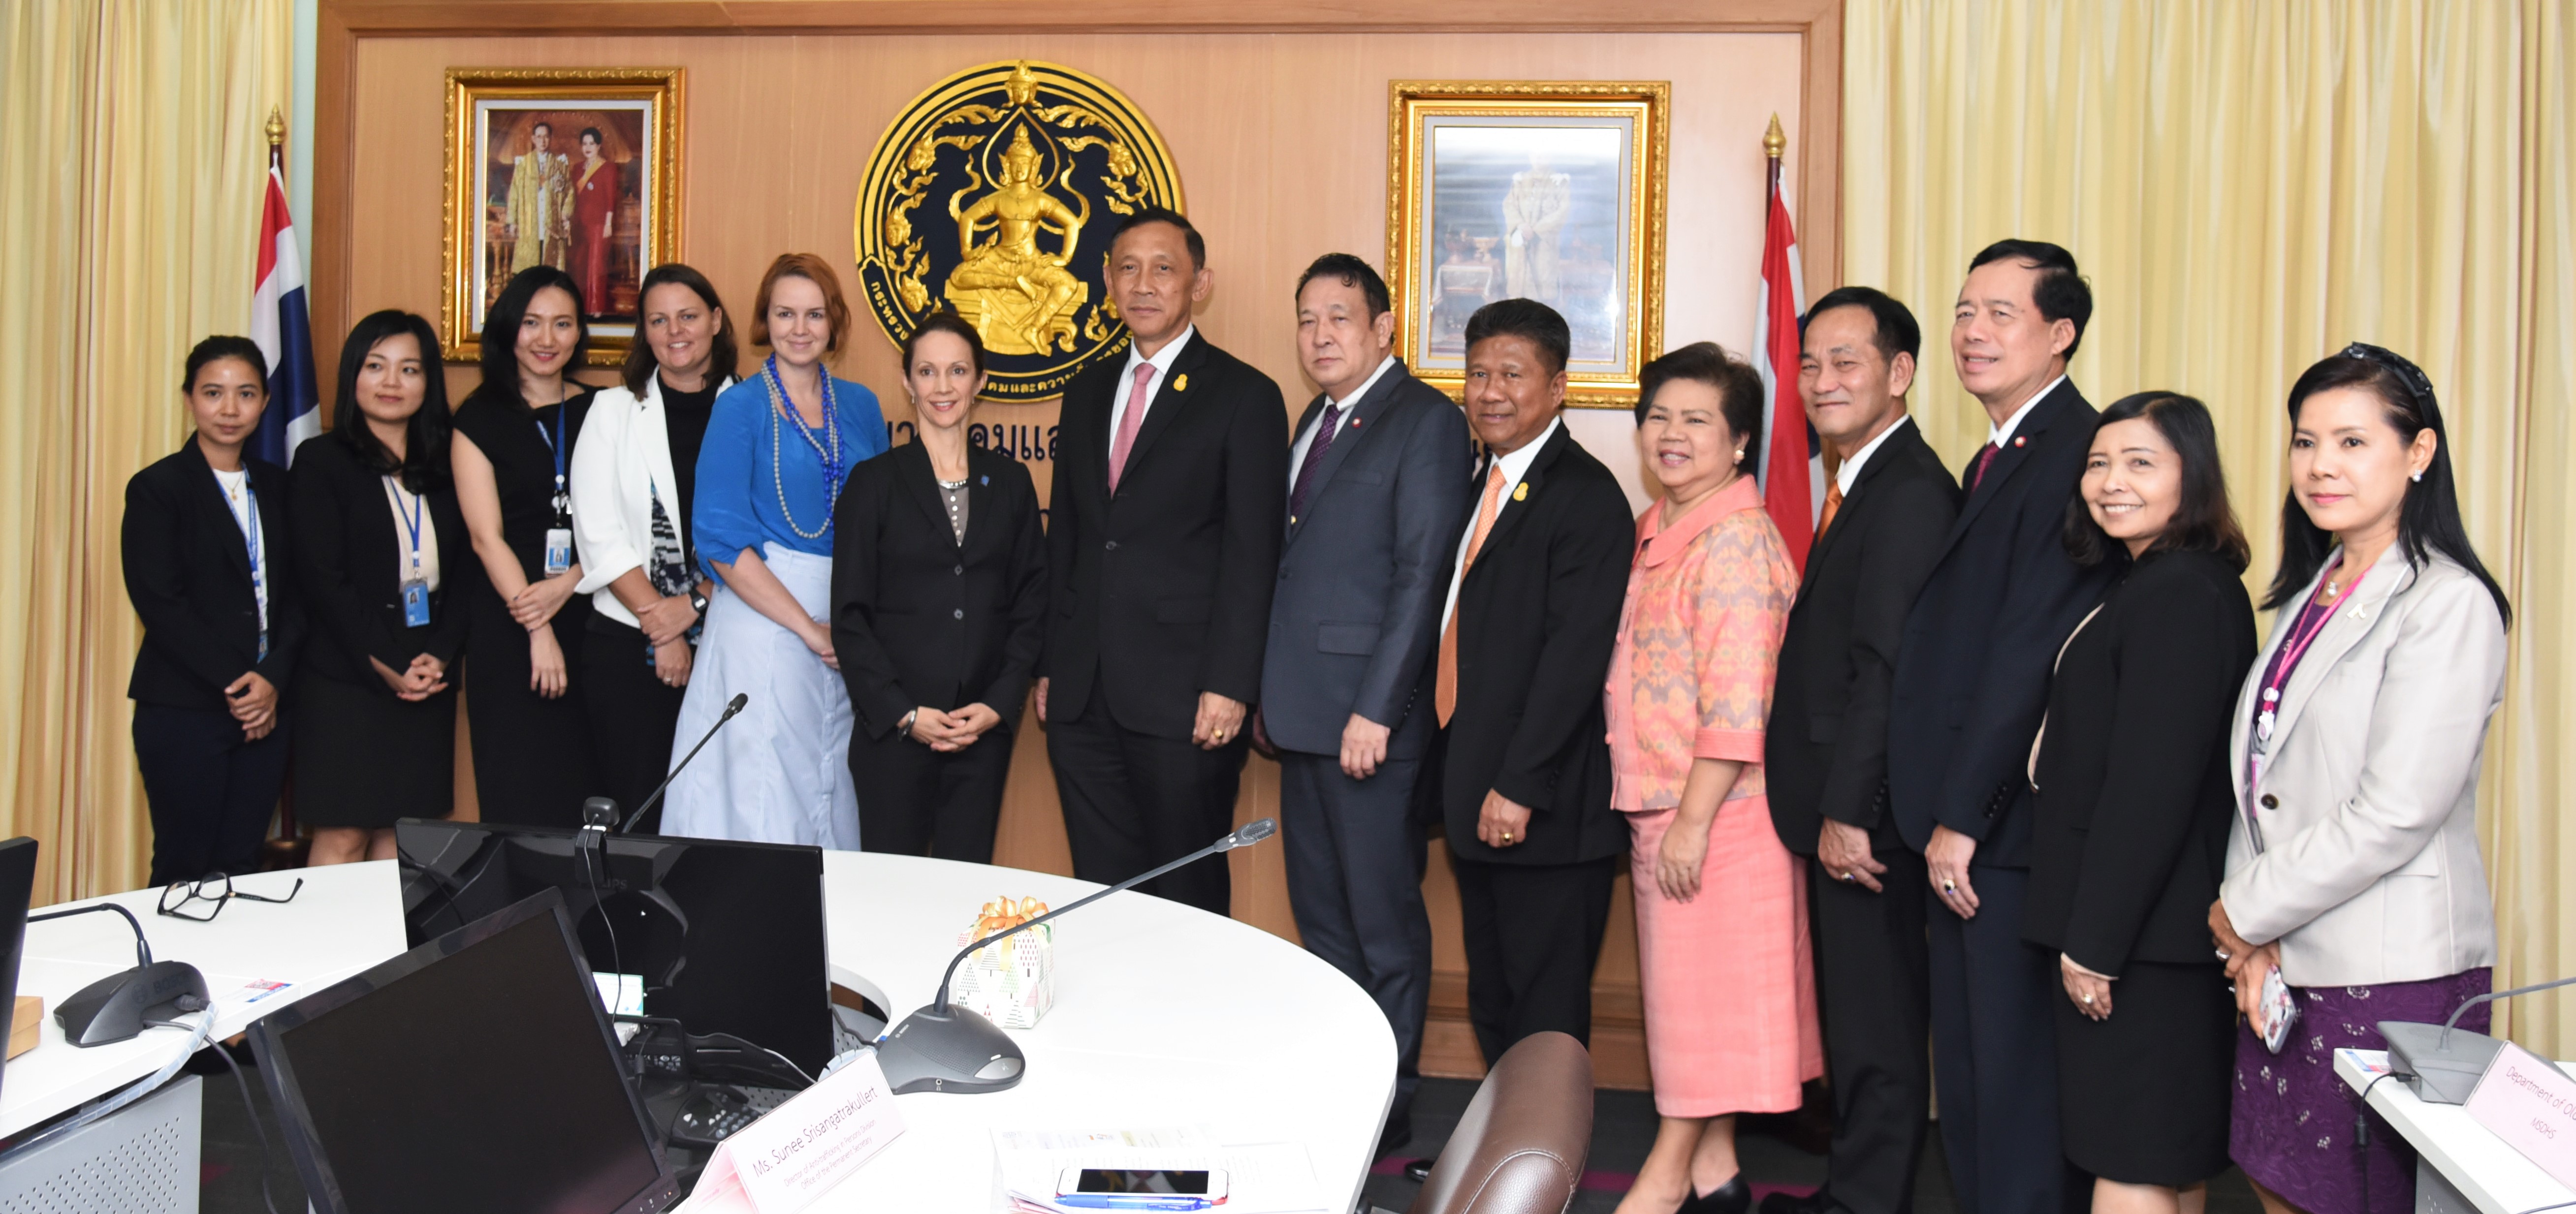 พม. ร่วมมือสำนักงานองค์การระหว่างประเทศเพื่อการโยกย้ายถิ่นฐาน (IOM) ประจำประเทศไทย